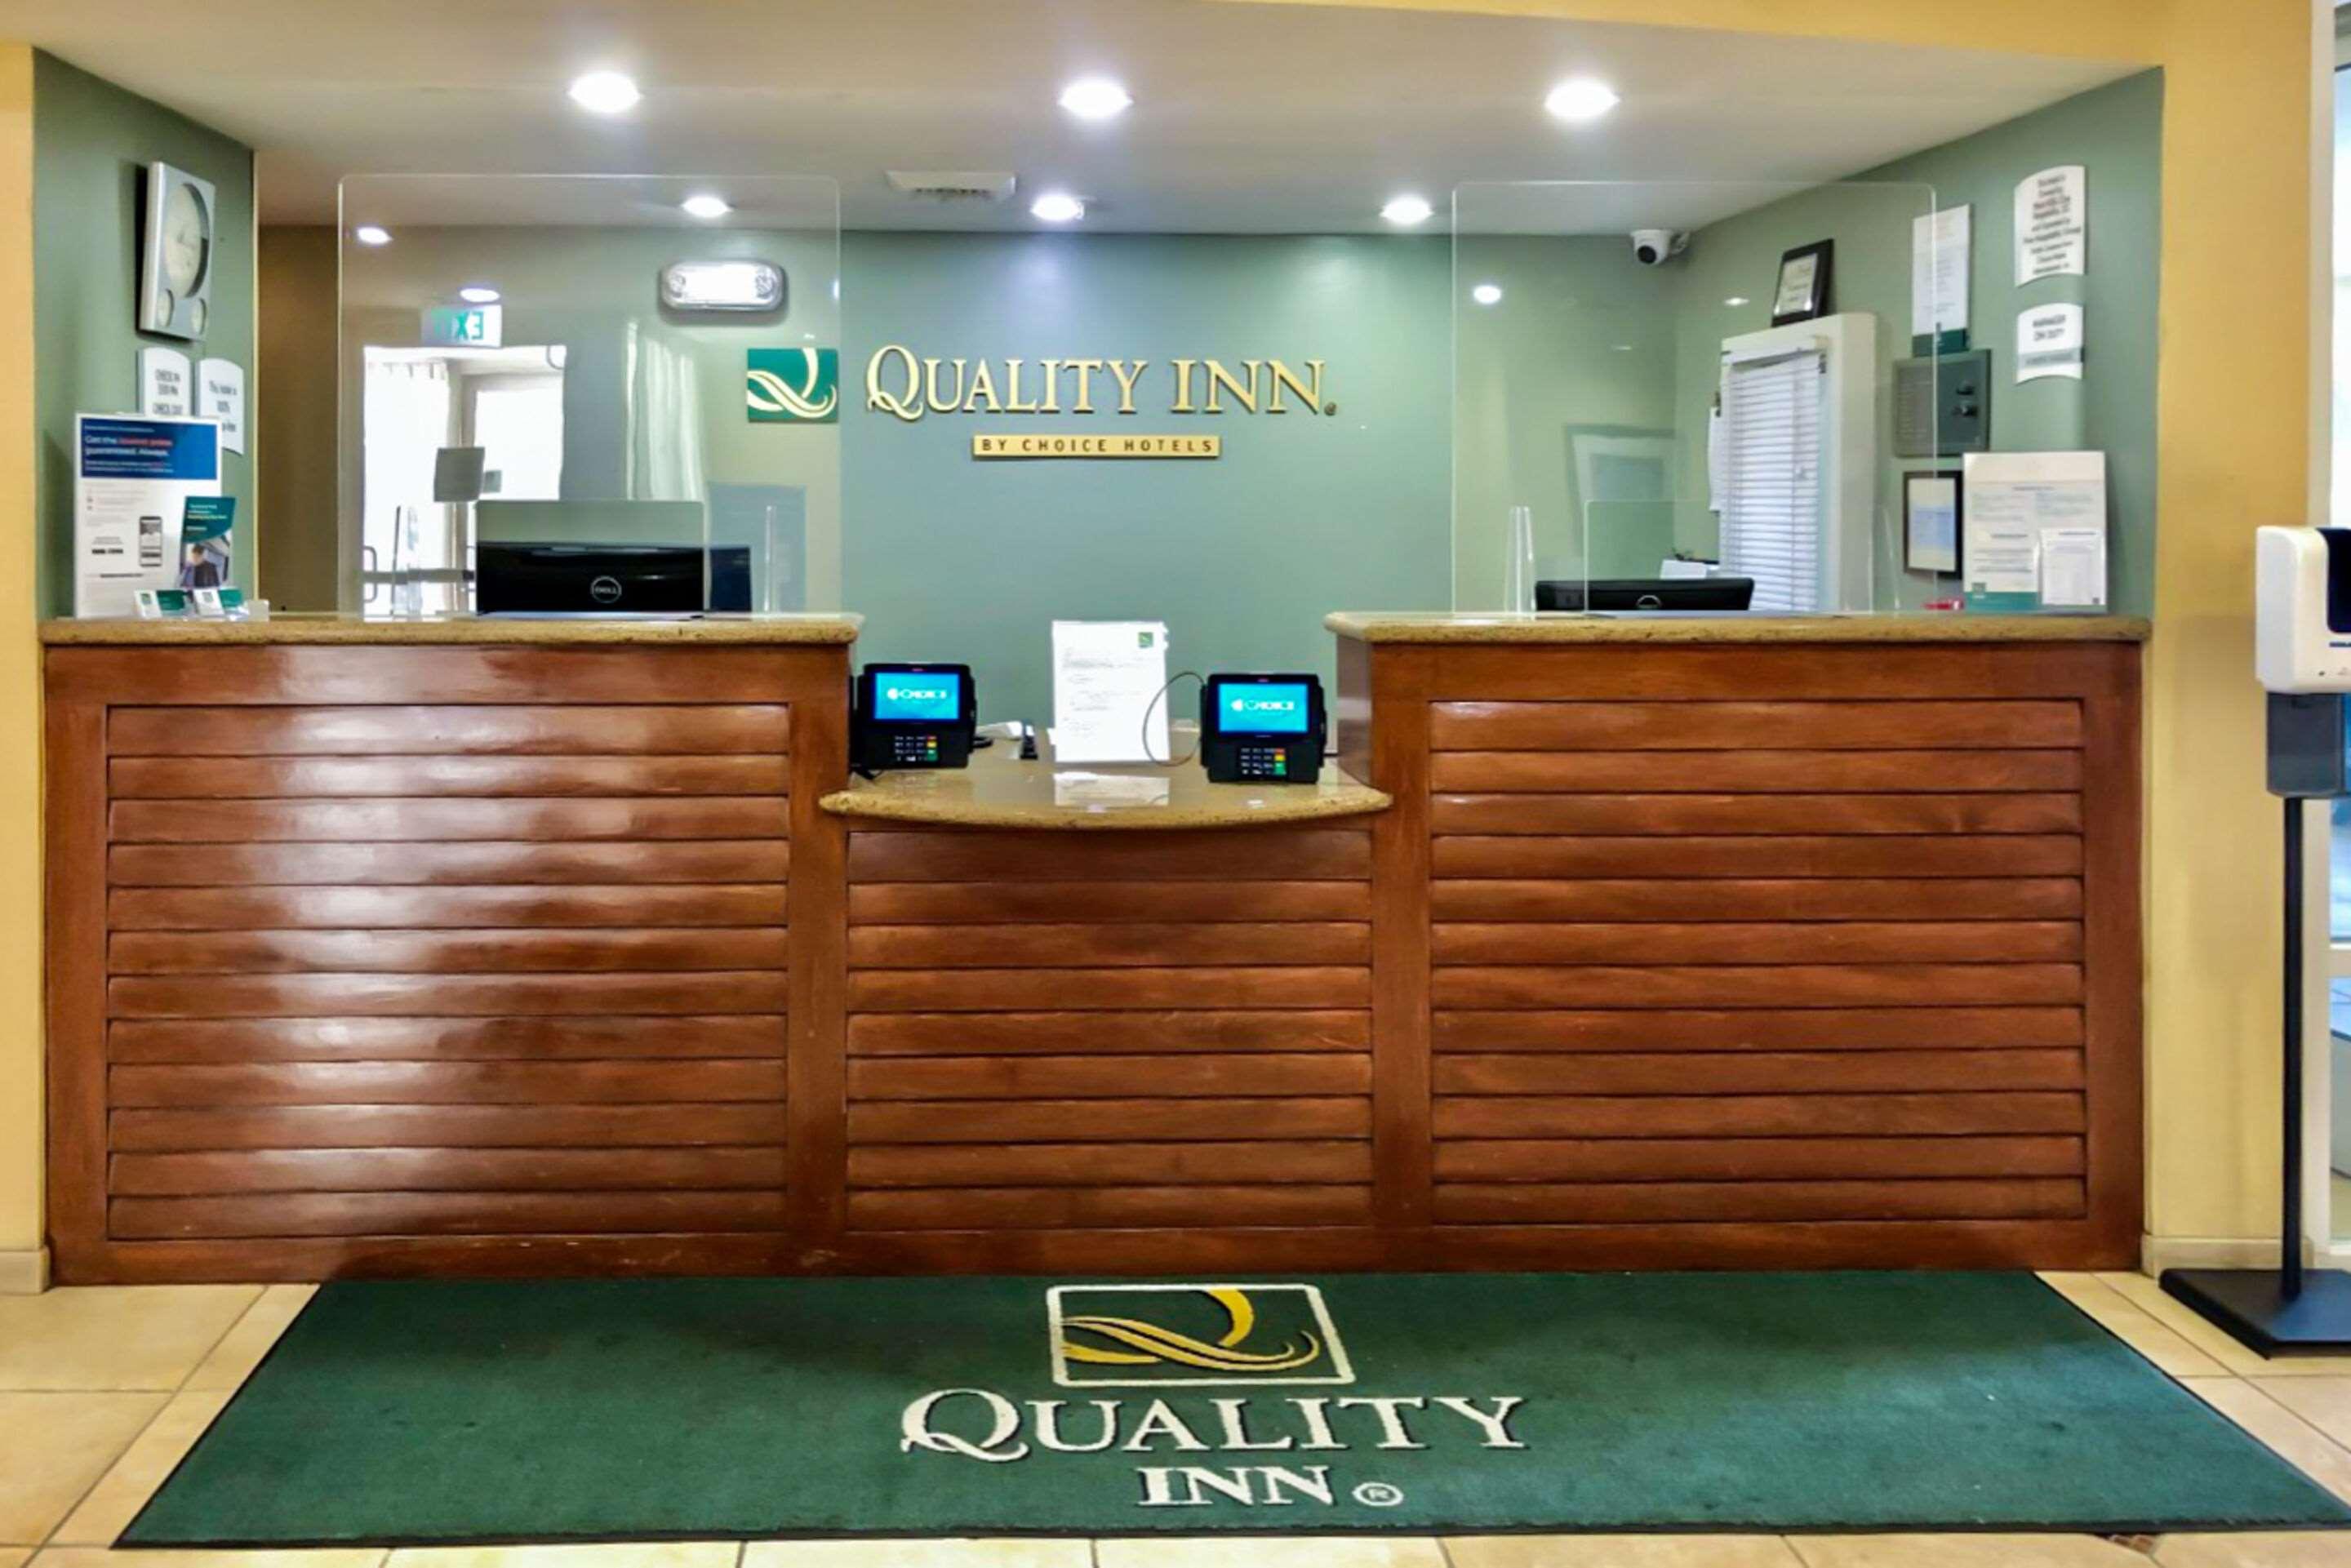 Quality Inn Placentia Anaheim